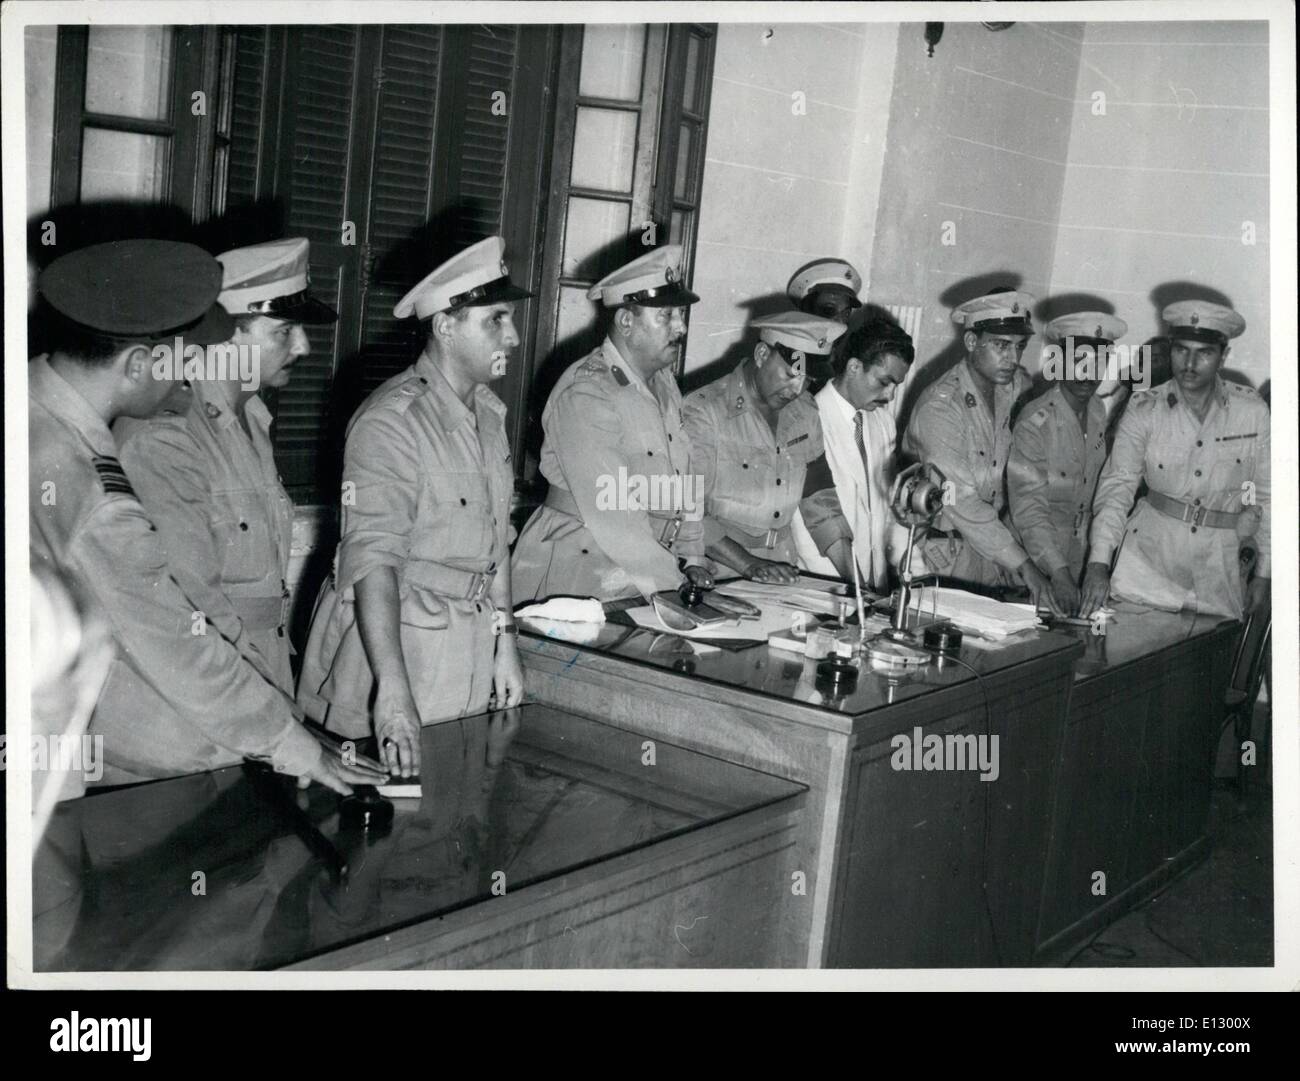 25 février 2012 - un tribunal spécial pour juger Adel Lamloum à Minia Haute Égypte, membres de la nouvelle cour militaire donnant le serment avant d'assumer leurs fonctions. La cour est sous la présidence de Co. Salah El Dine Hitata qui commande le 2e Bataillon Banque D'Images